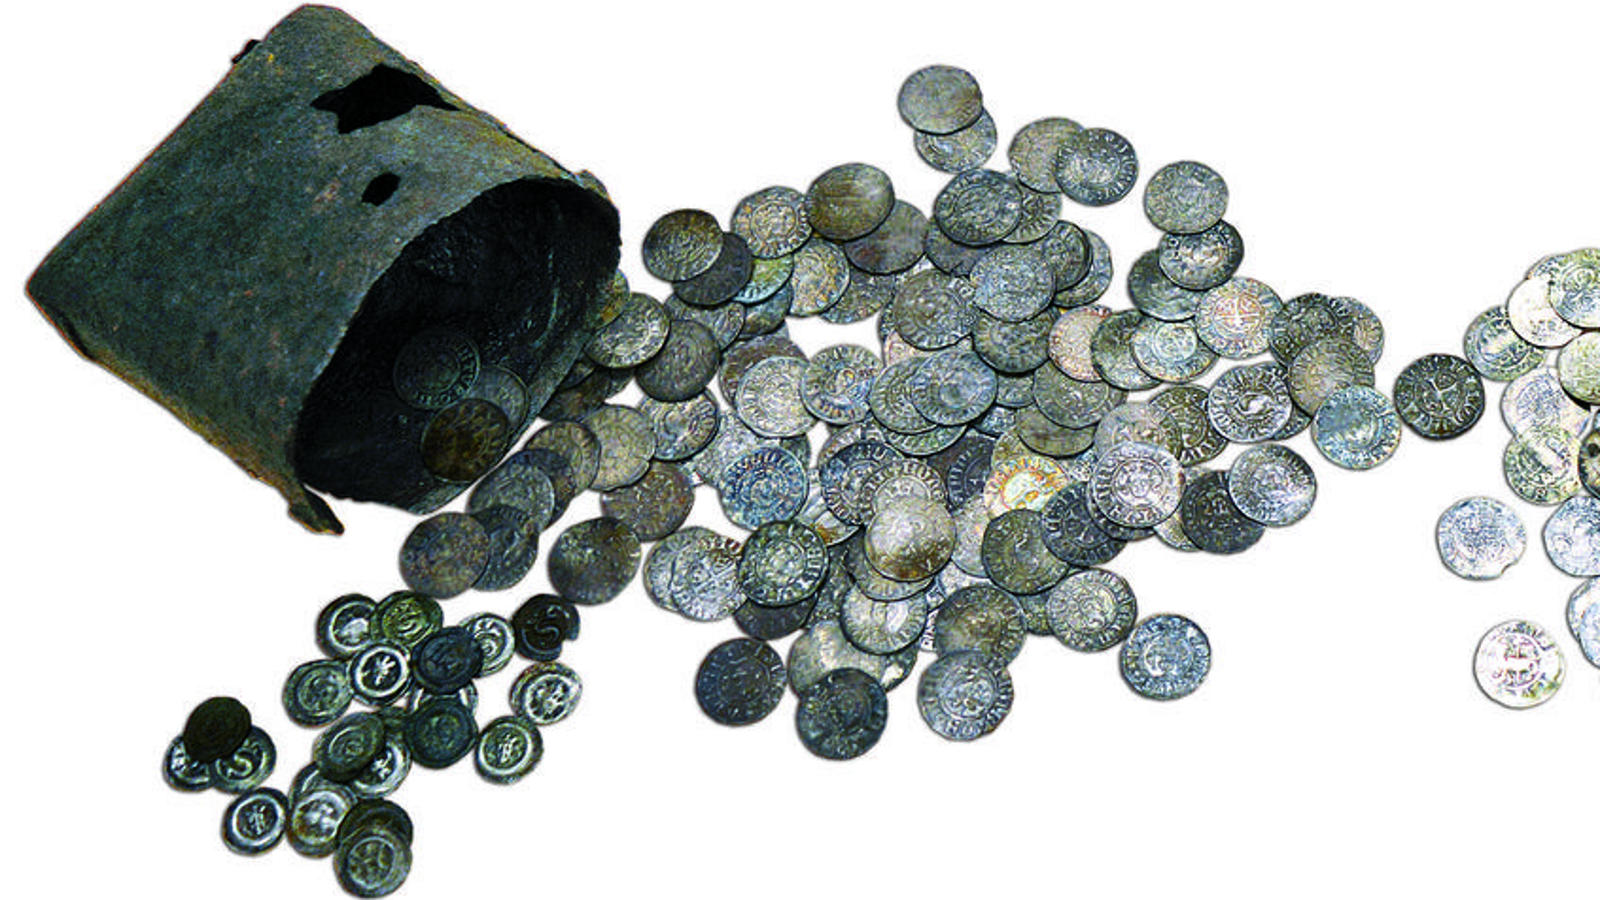 Kuvassa on rahamassi, josta on levinnyt runsas määrä keskiaikaisia kolikoita.   